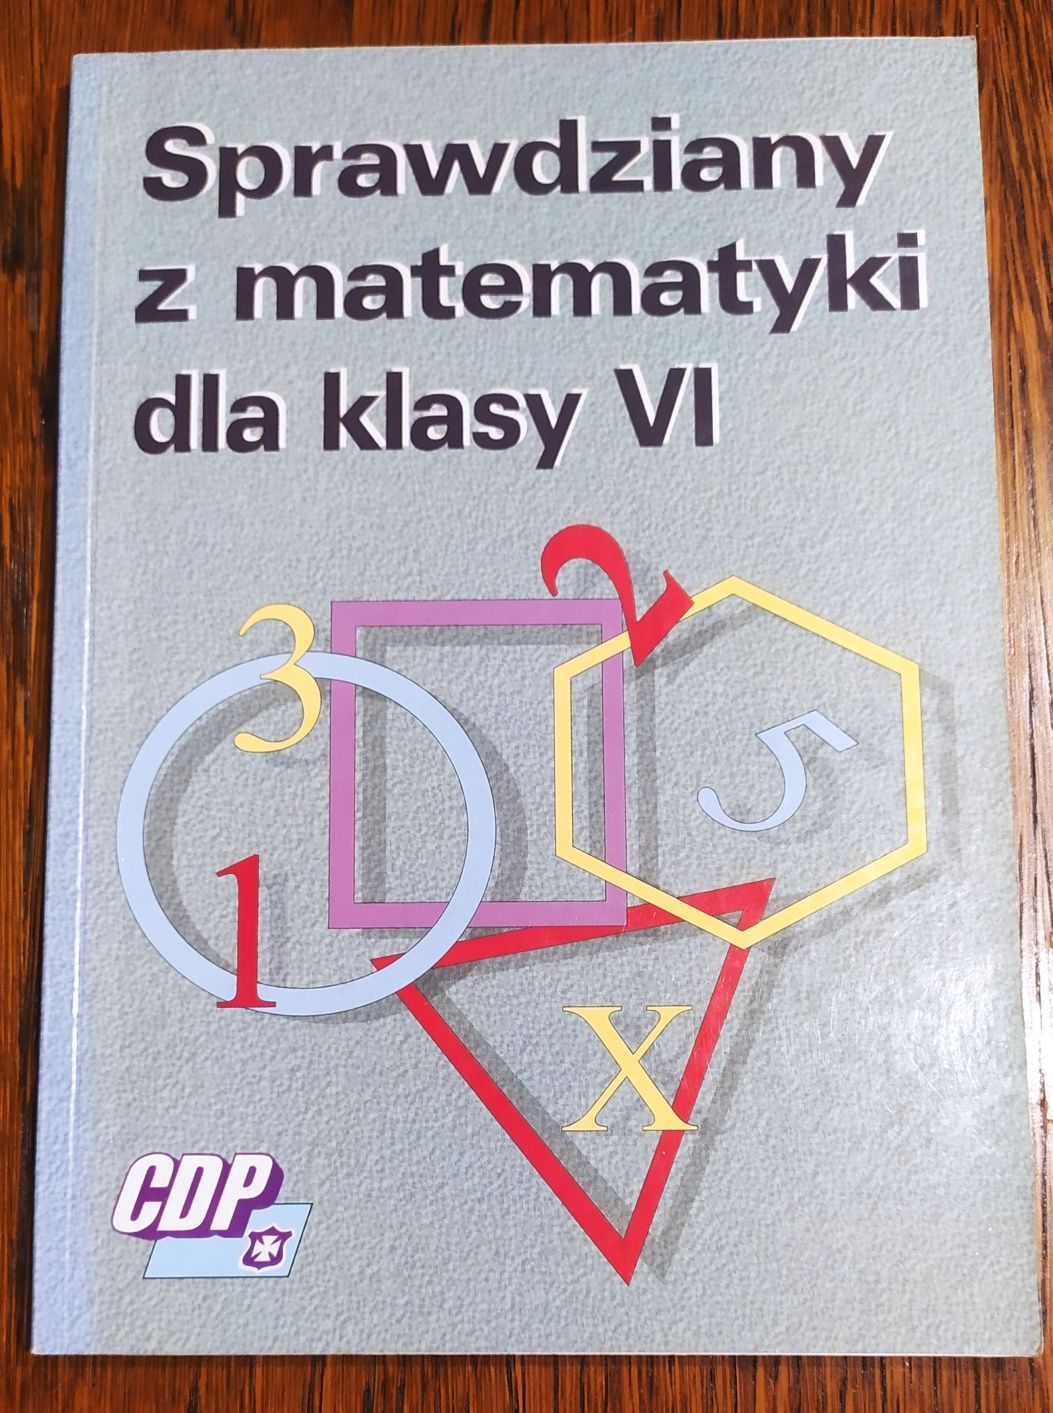 Sprawdziany z matematyki dla klasy VI - CDP - Emilia Kozak